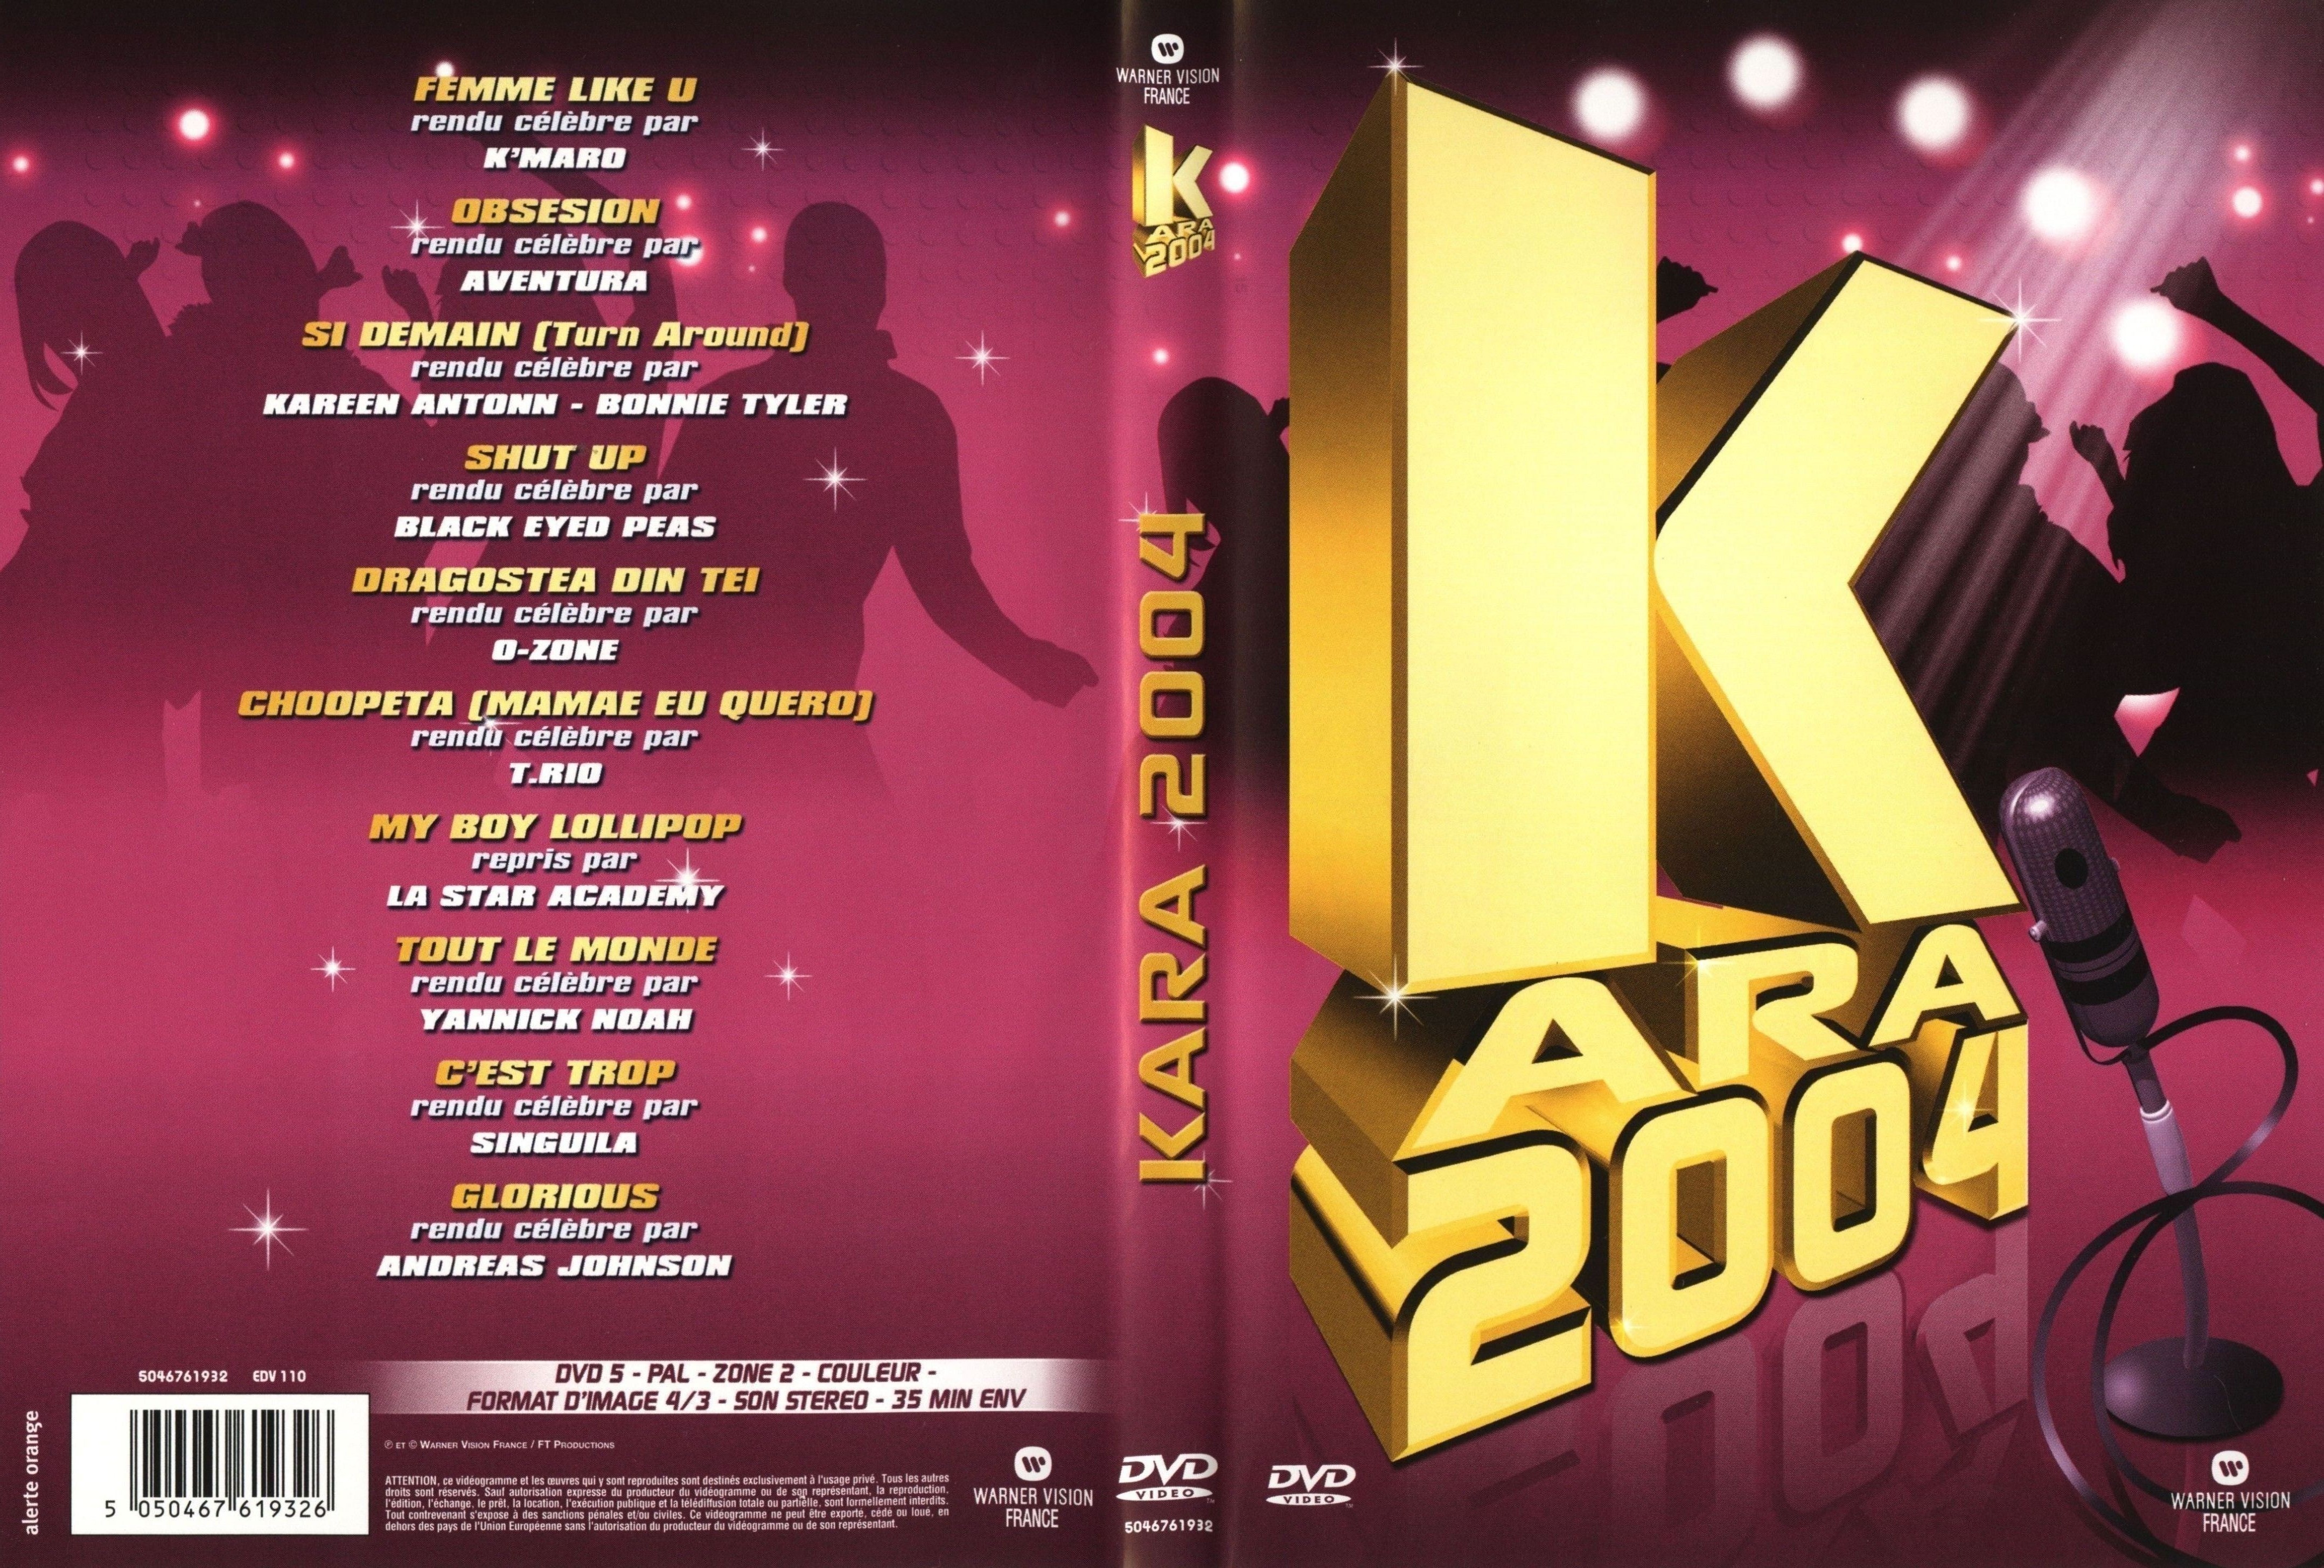 Jaquette DVD Kara 2004